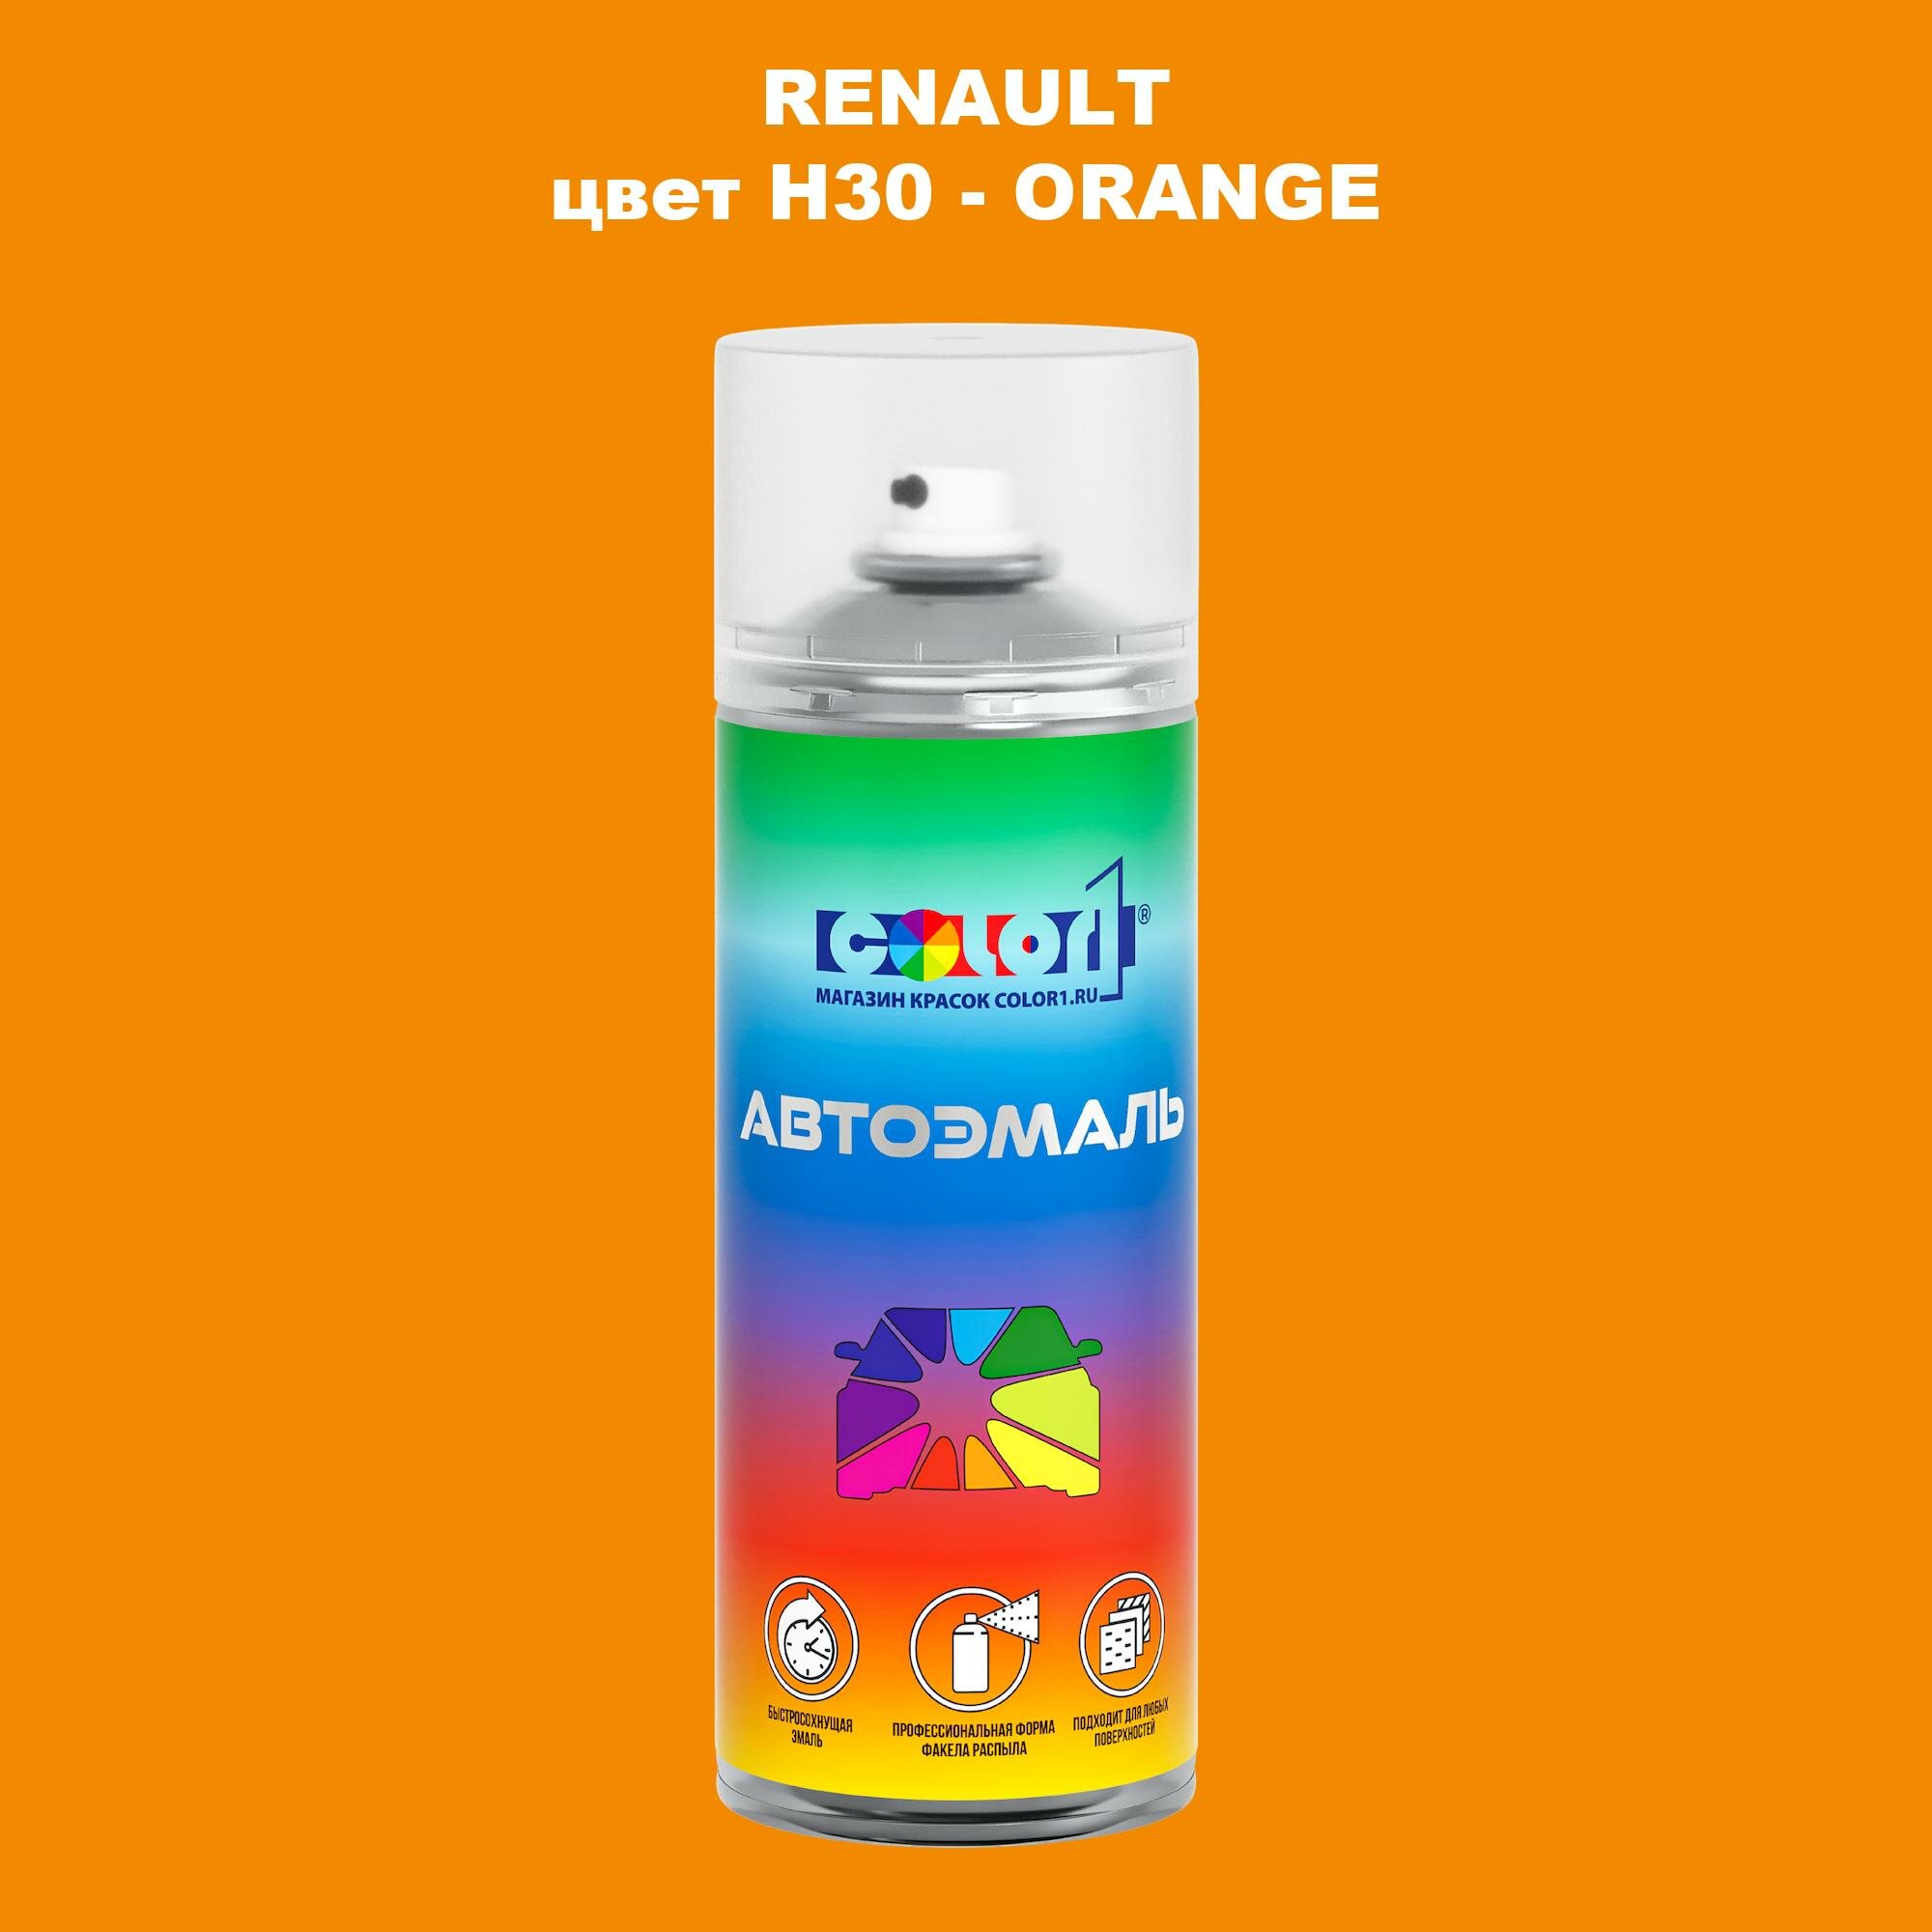 Аэрозольная краска COLOR1 для RENAULT цвет H30 - ORANGE